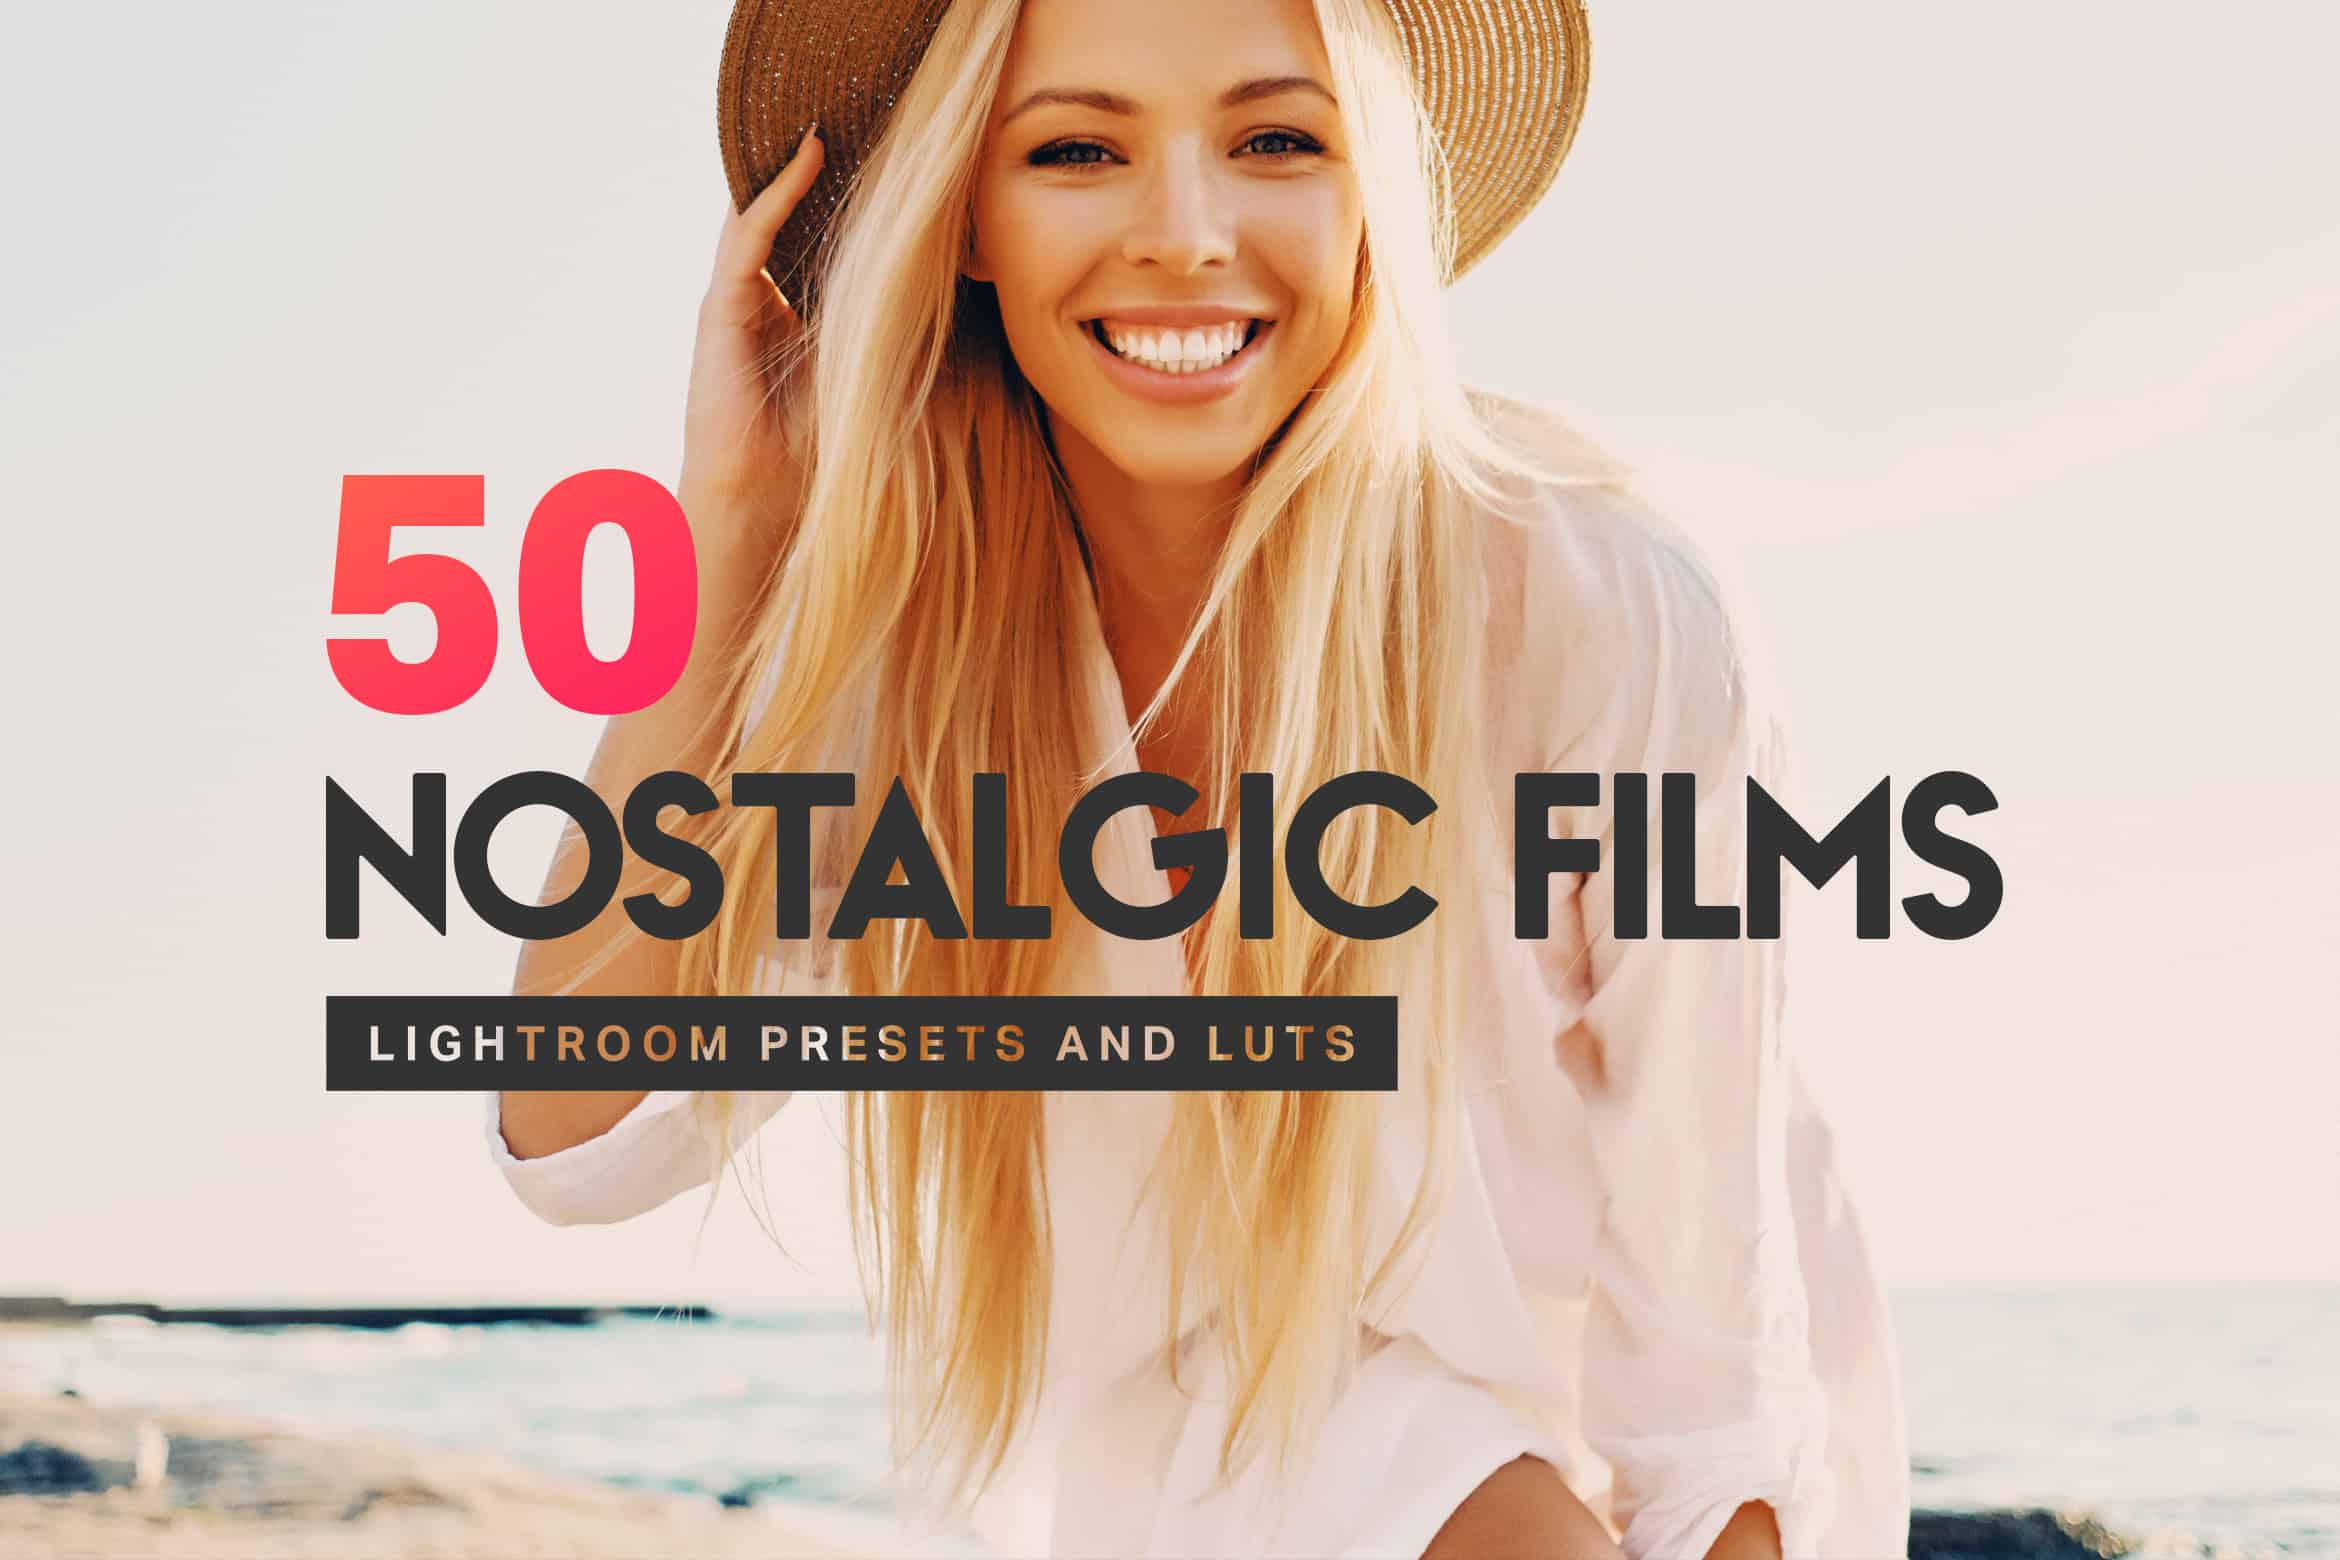 50 Nostalgic Films Lightroom Presets and LUTs